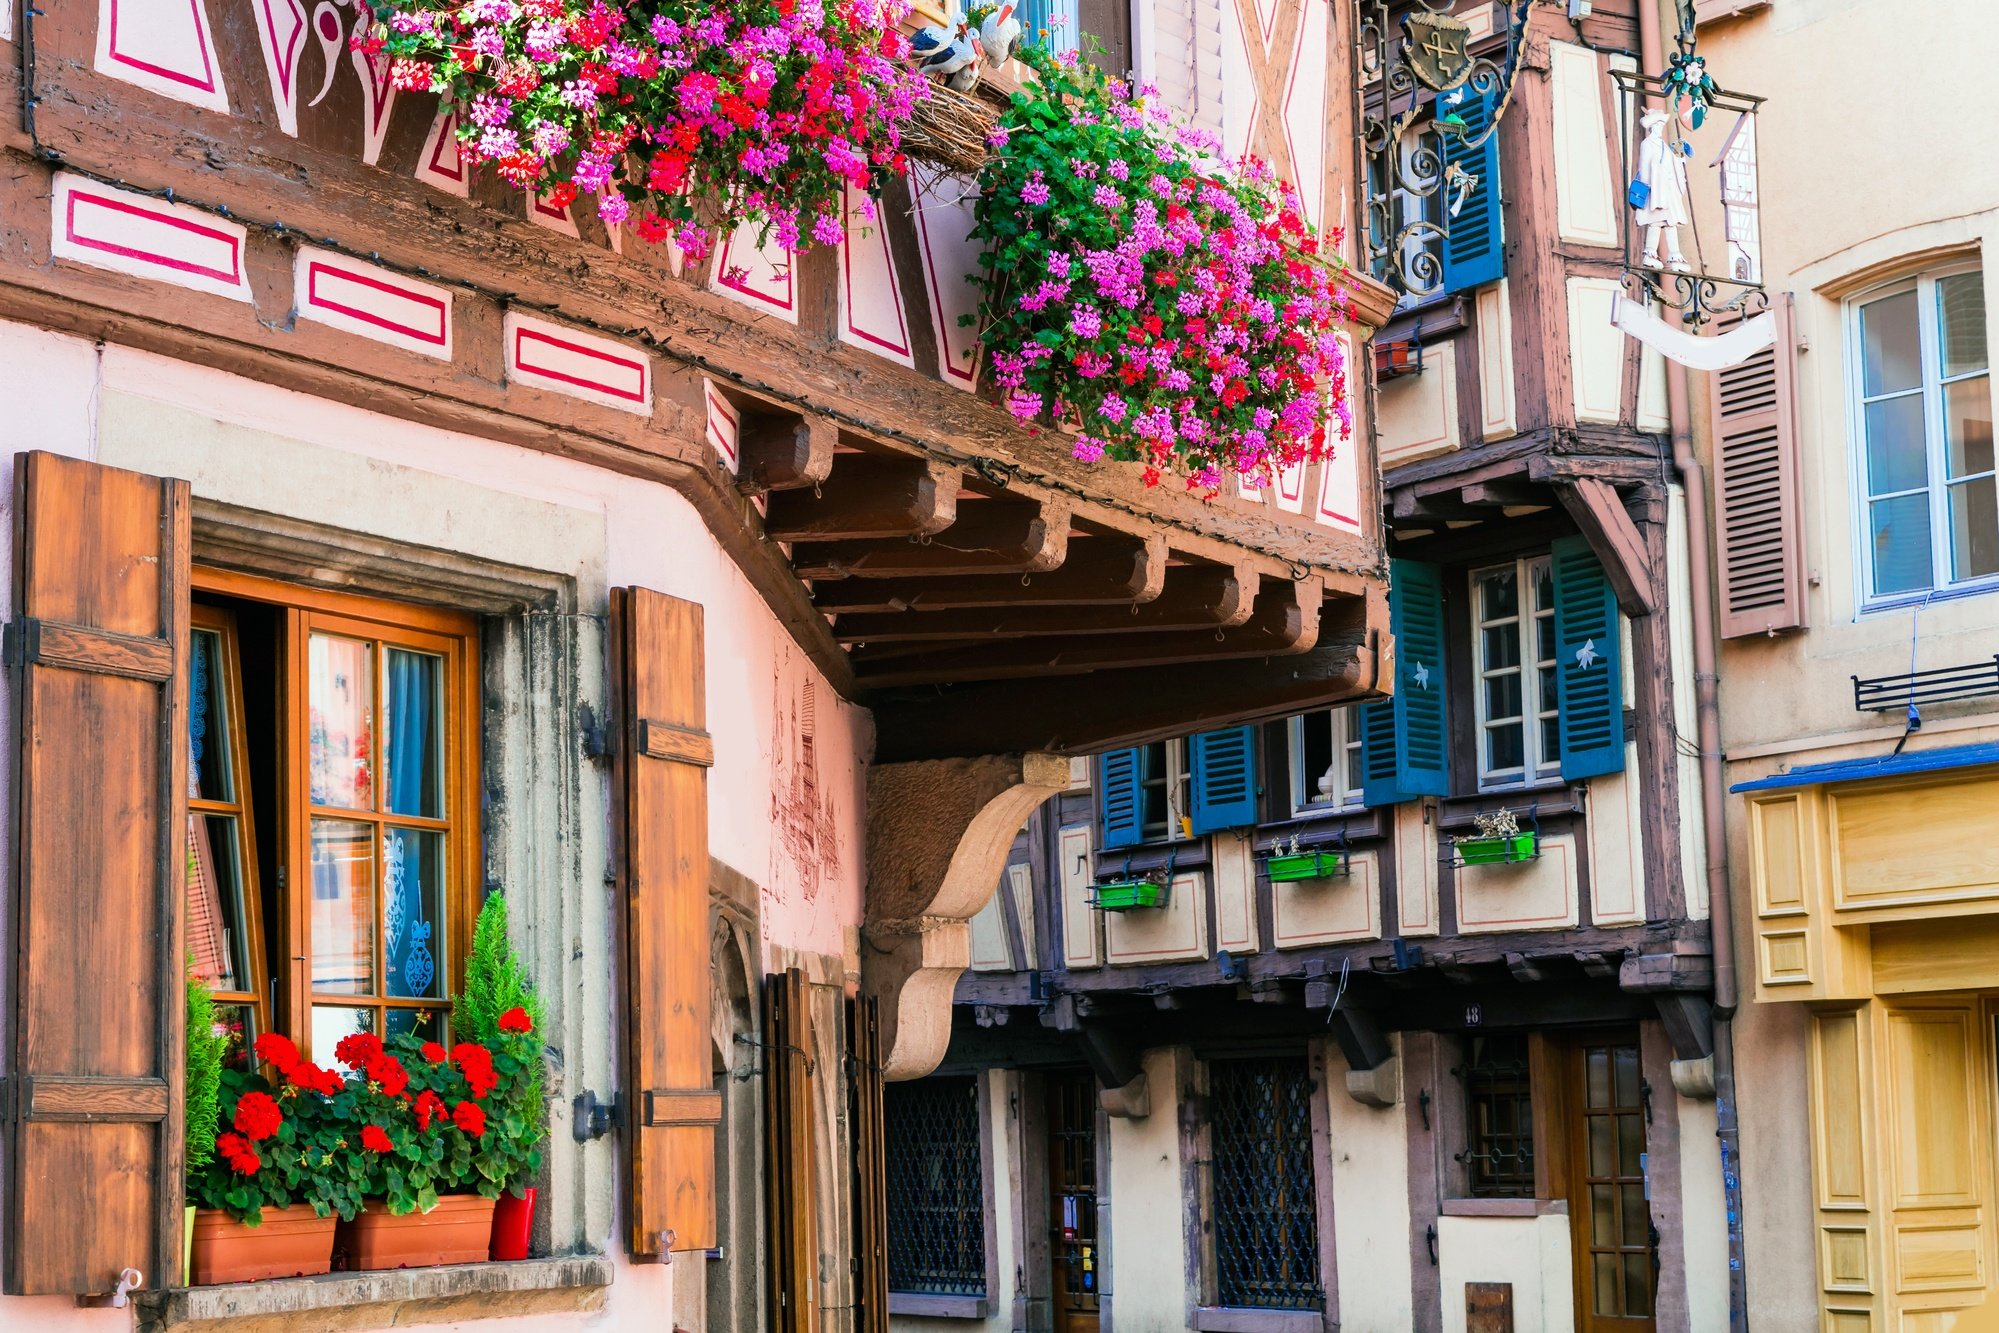 Charming buildings in Strasbourg